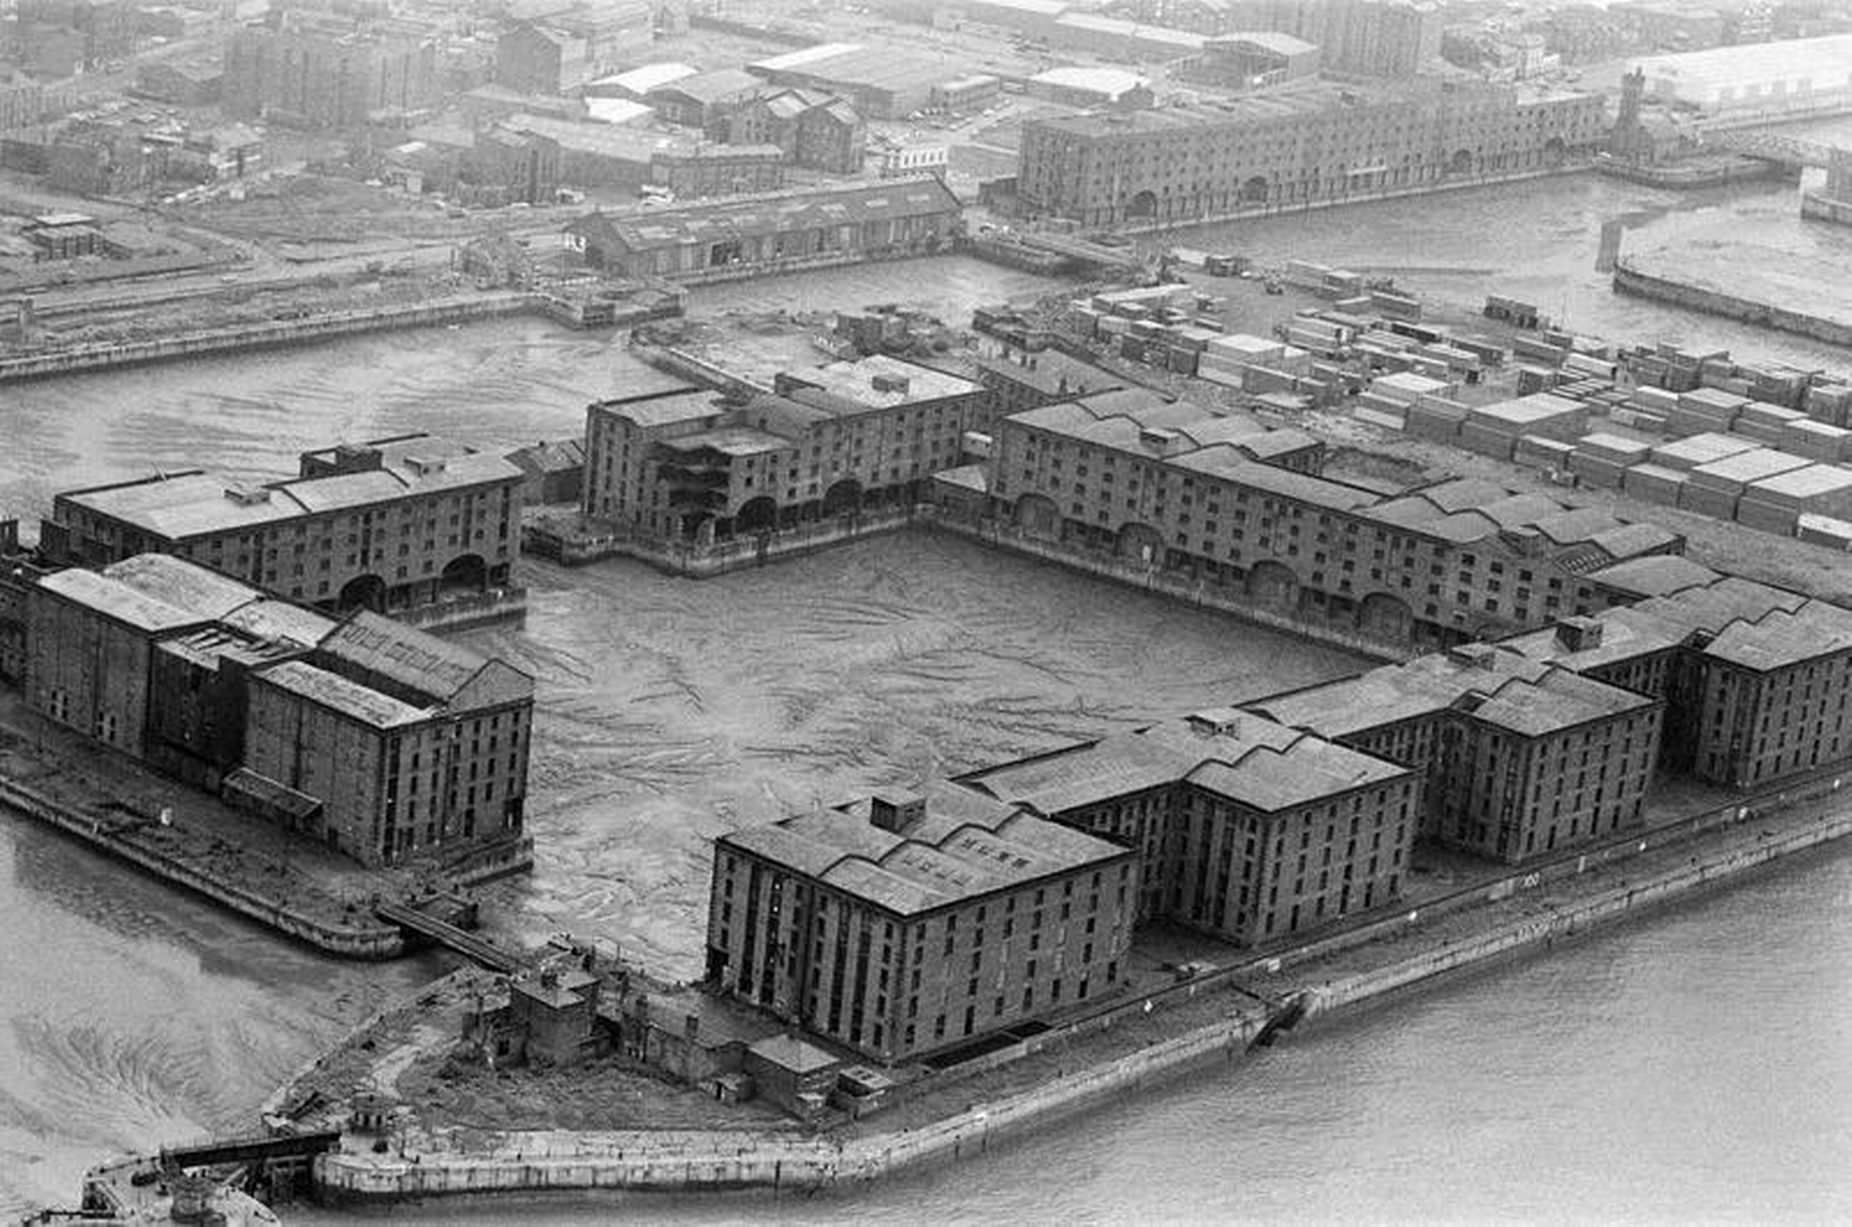 Albert Dock in the 1980s